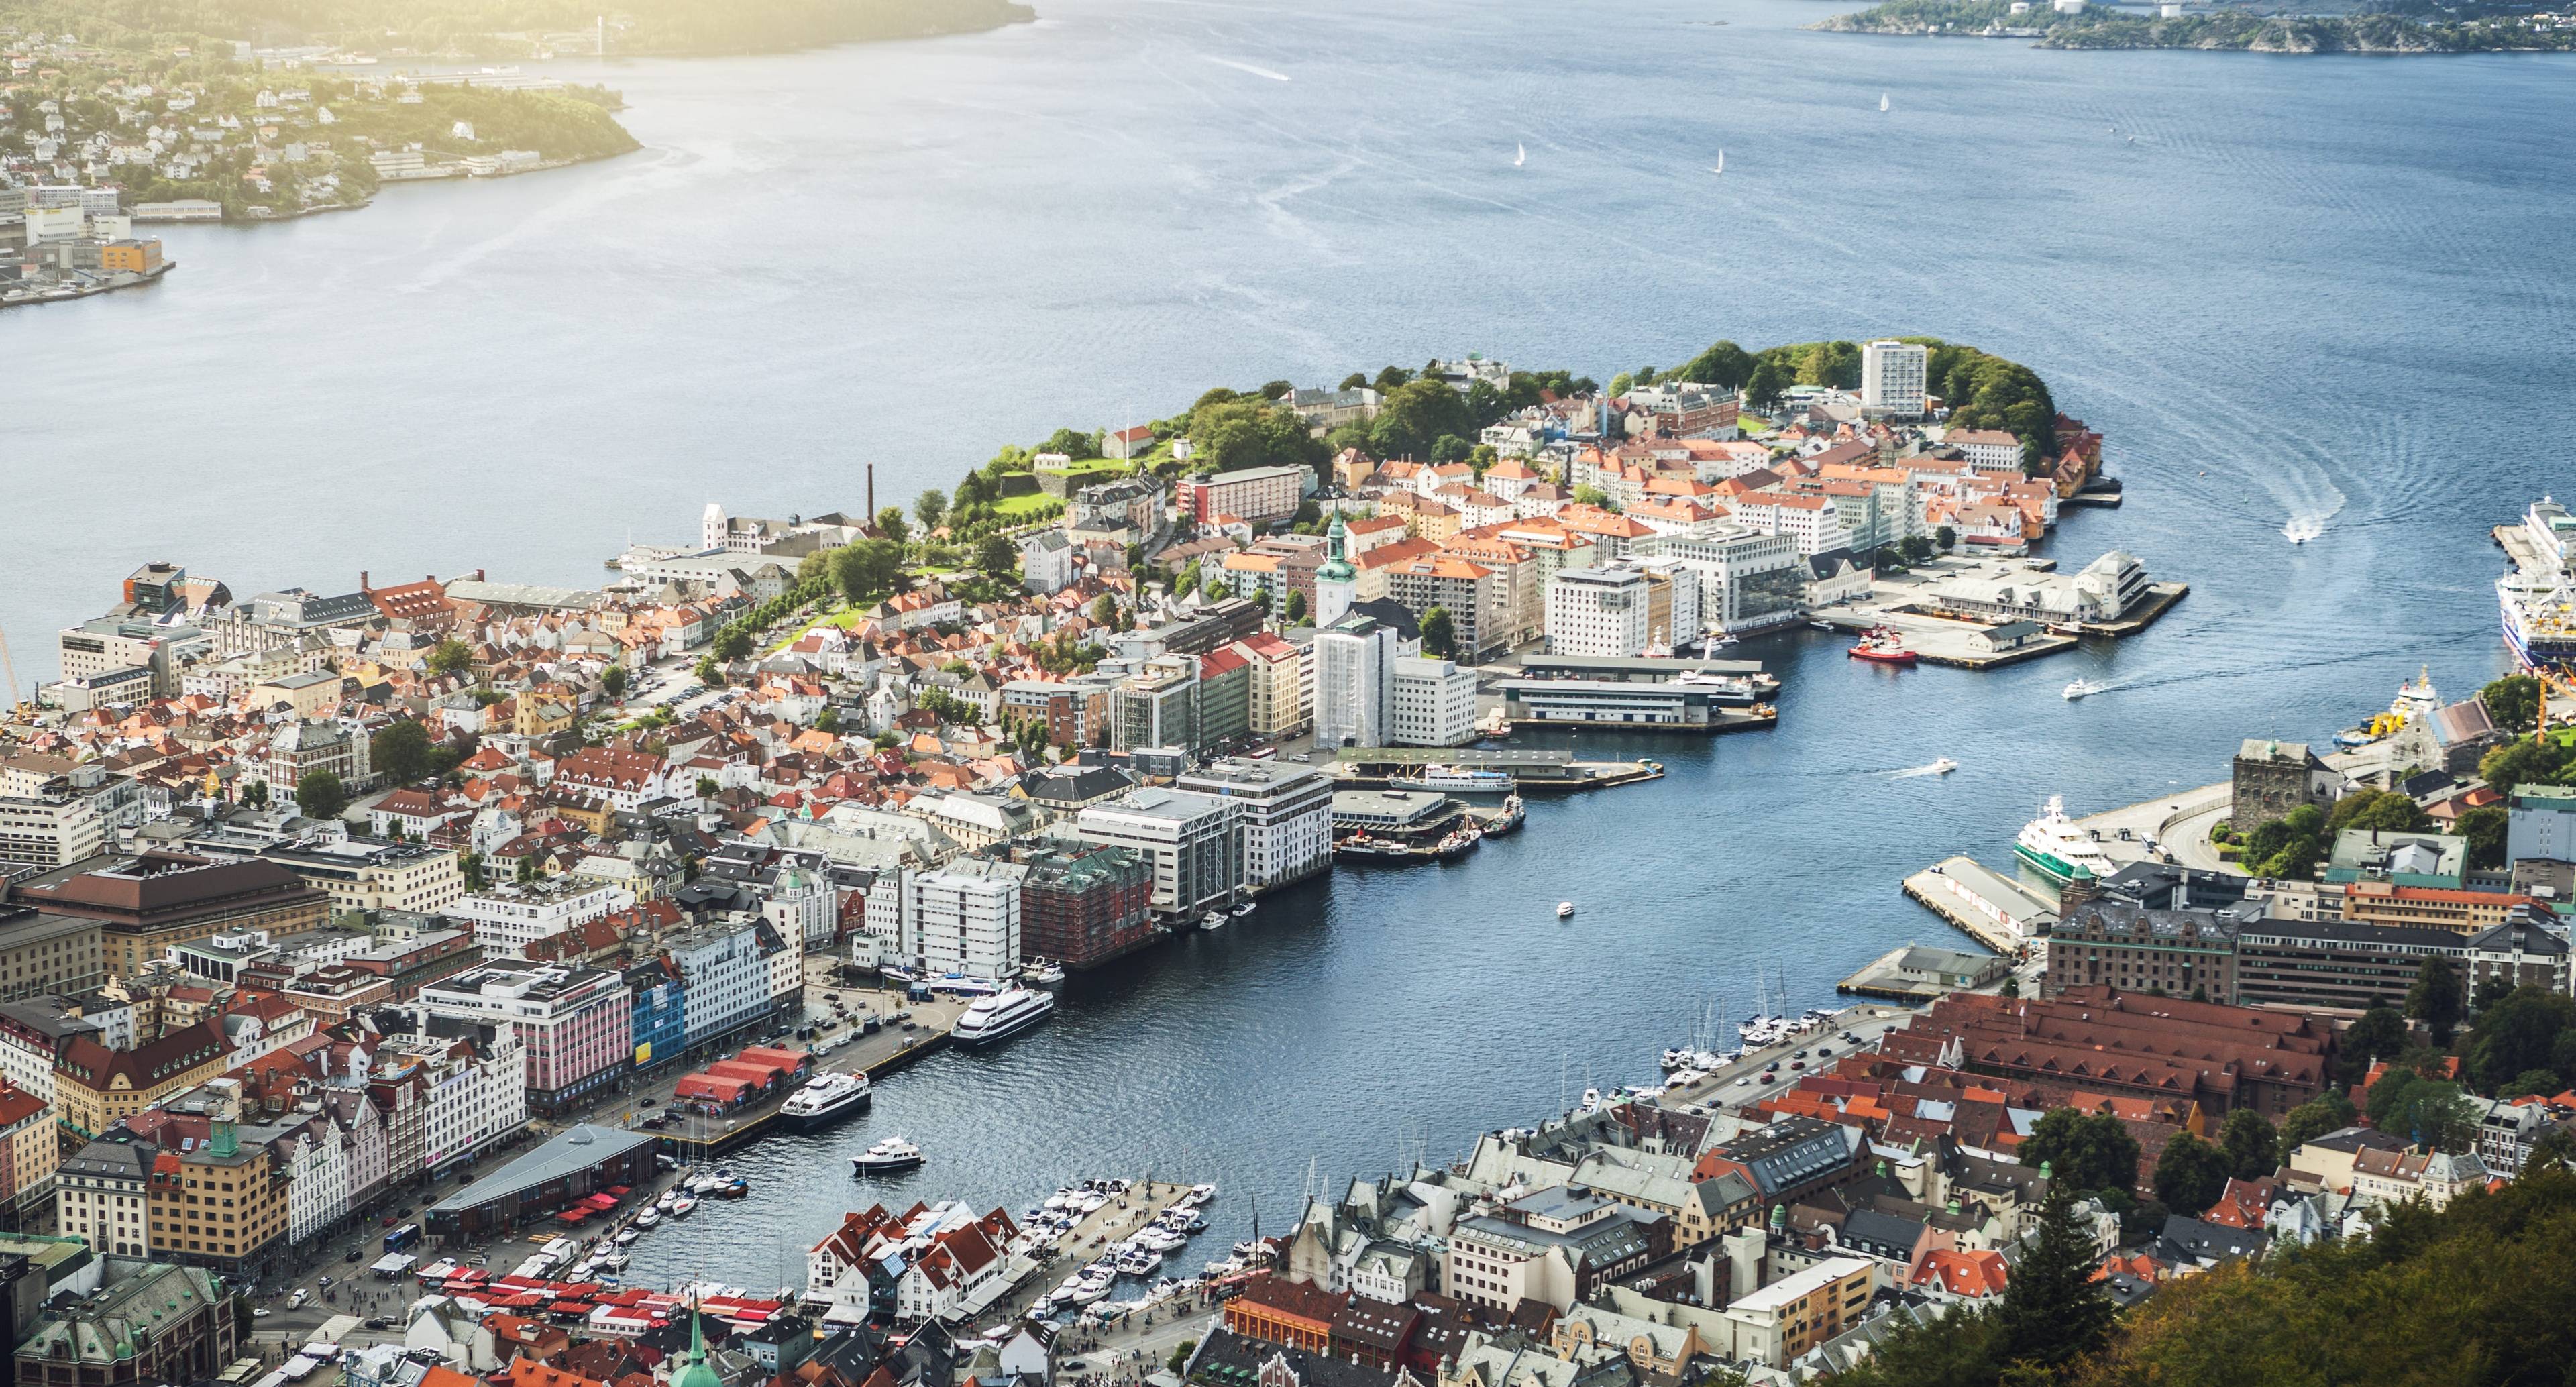 Scoprite le meravigliose montagne che circondano la città di Bergen durante questa avventura lungo la famosa costa norvegese.